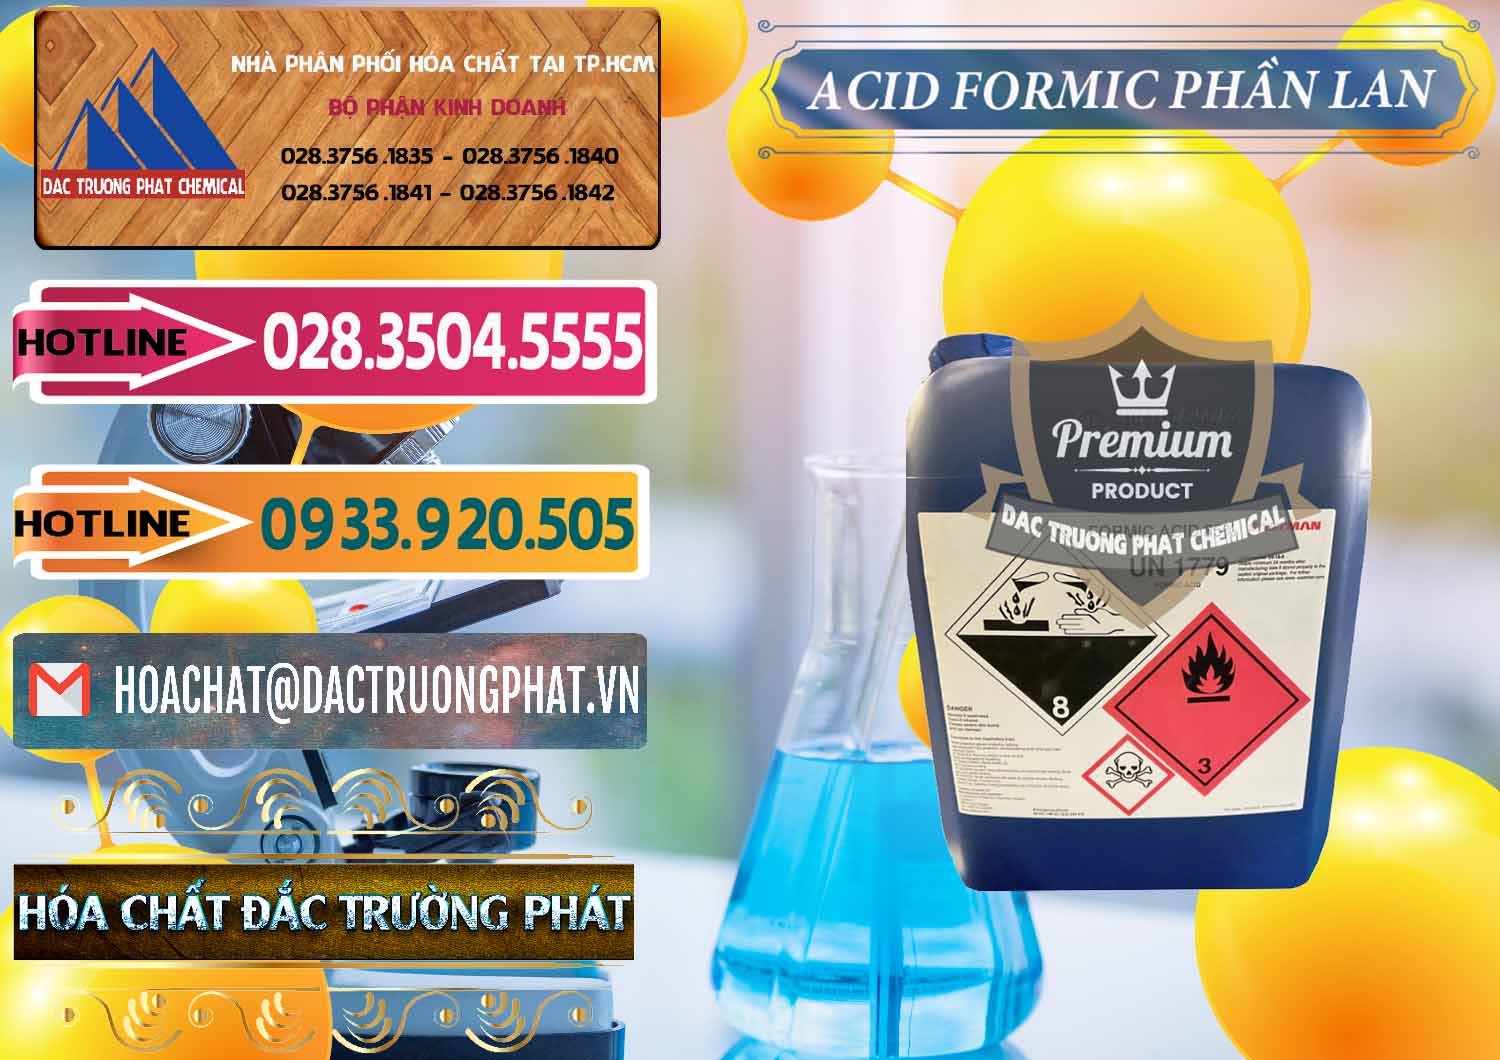 Bán _ cung ứng Acid Formic - Axit Formic Phần Lan Finland - 0376 - Chuyên bán - phân phối hóa chất tại TP.HCM - dactruongphat.vn